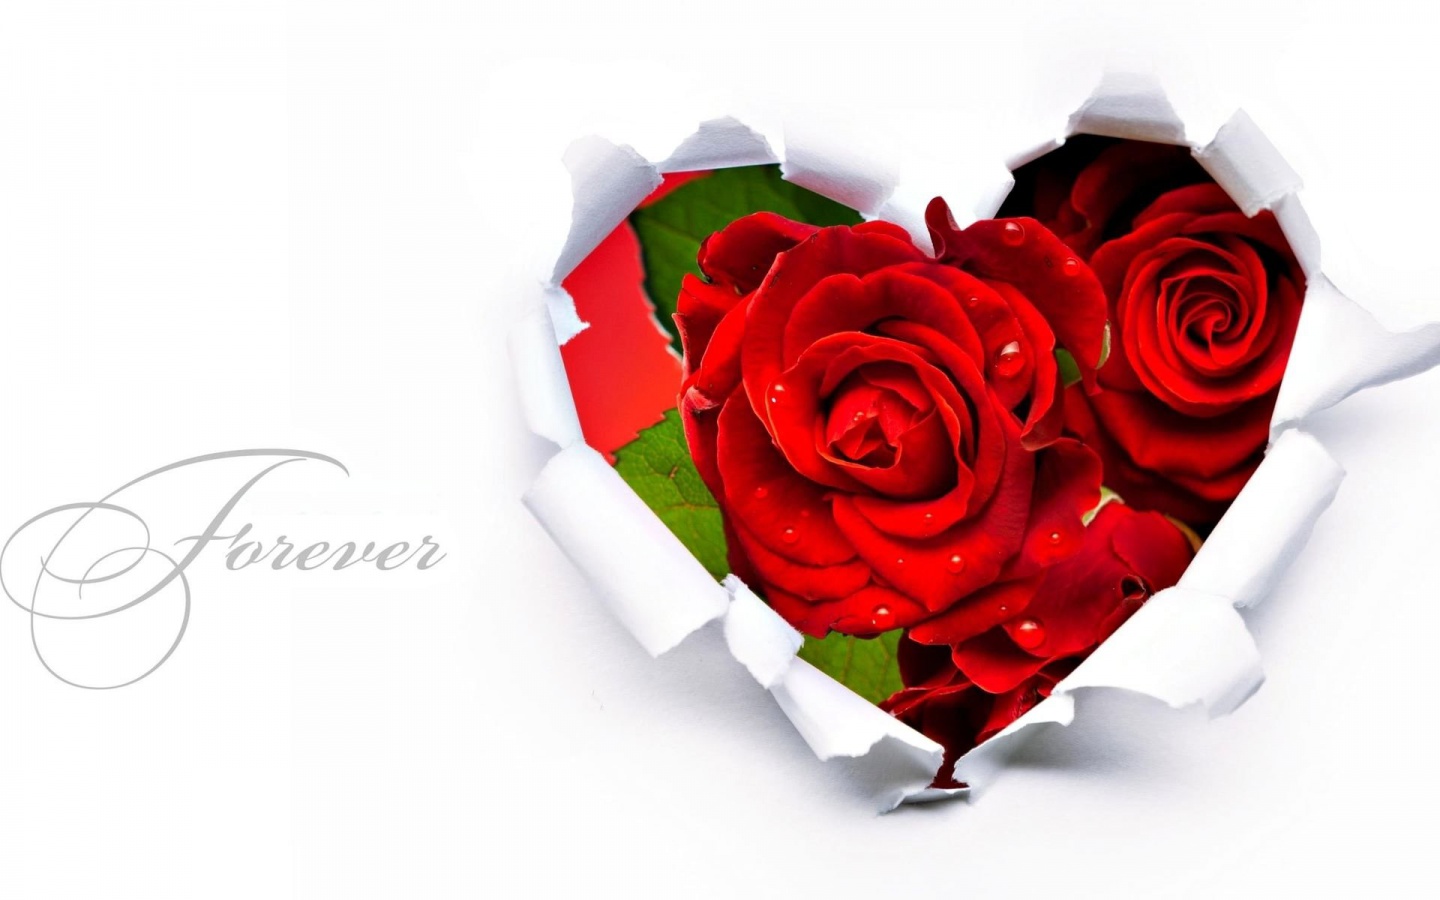 Roses - Flowers Wallpaper (31067210) - Fanpop